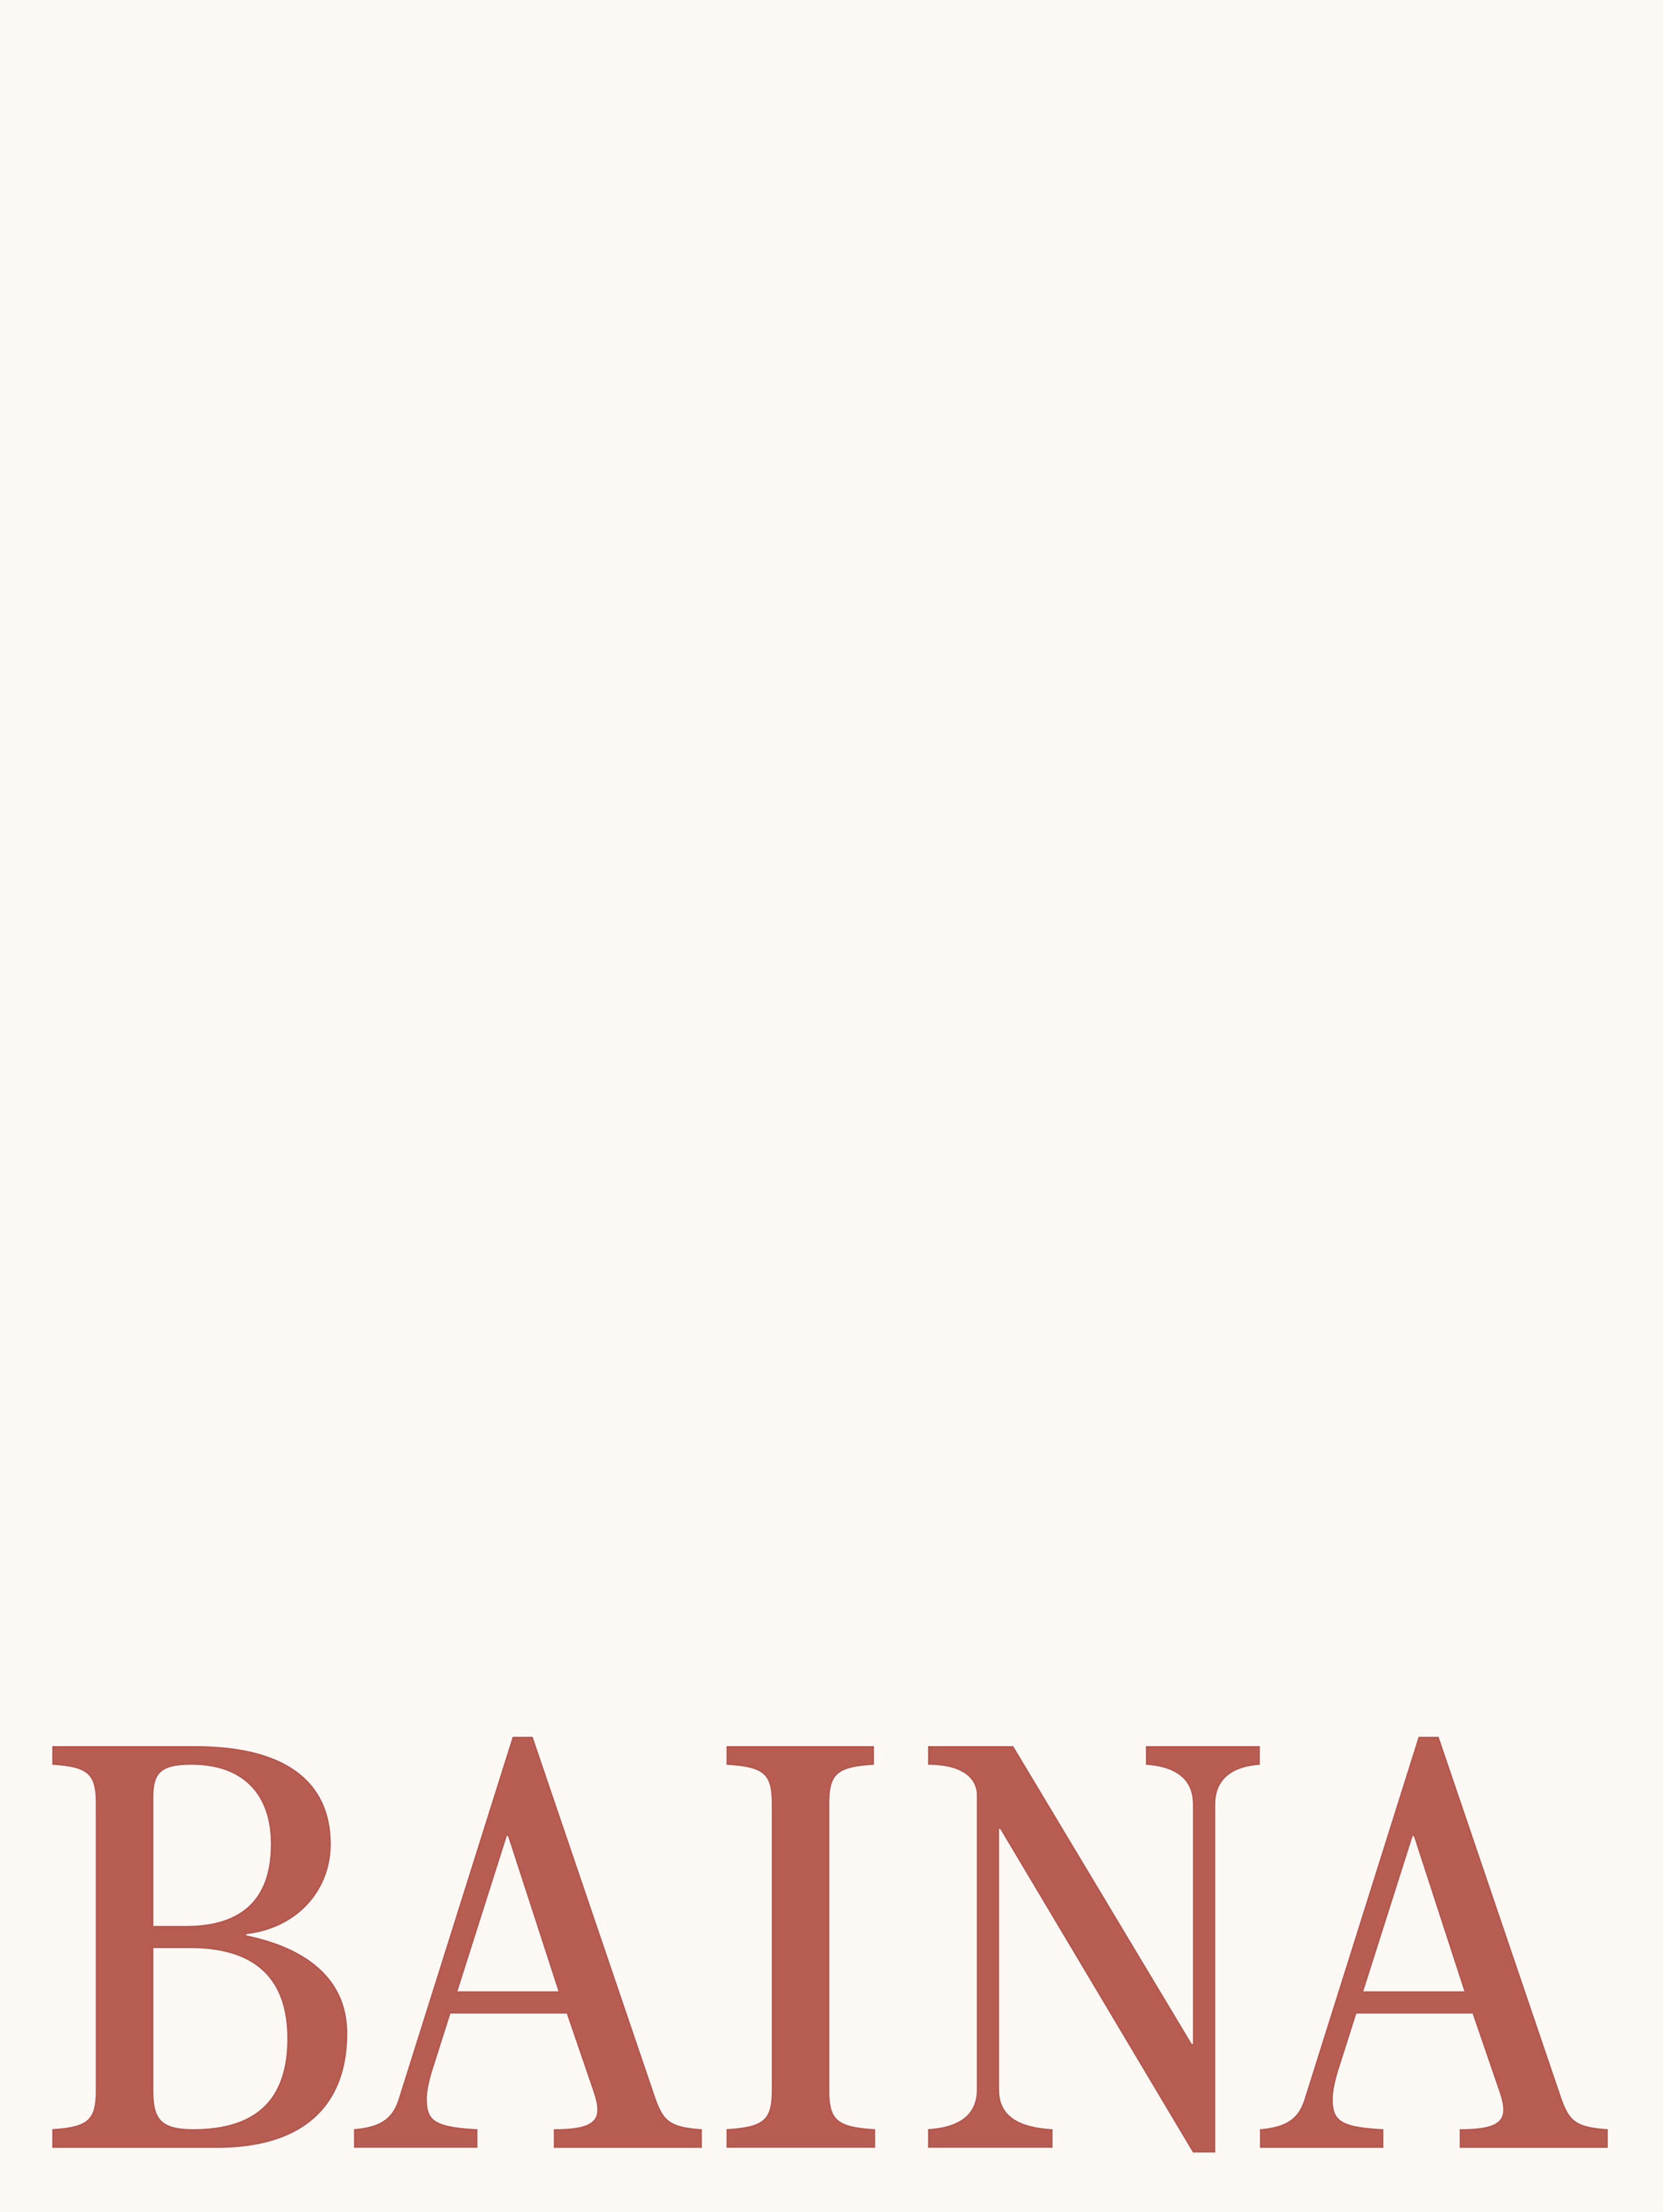 BAINA Logotype